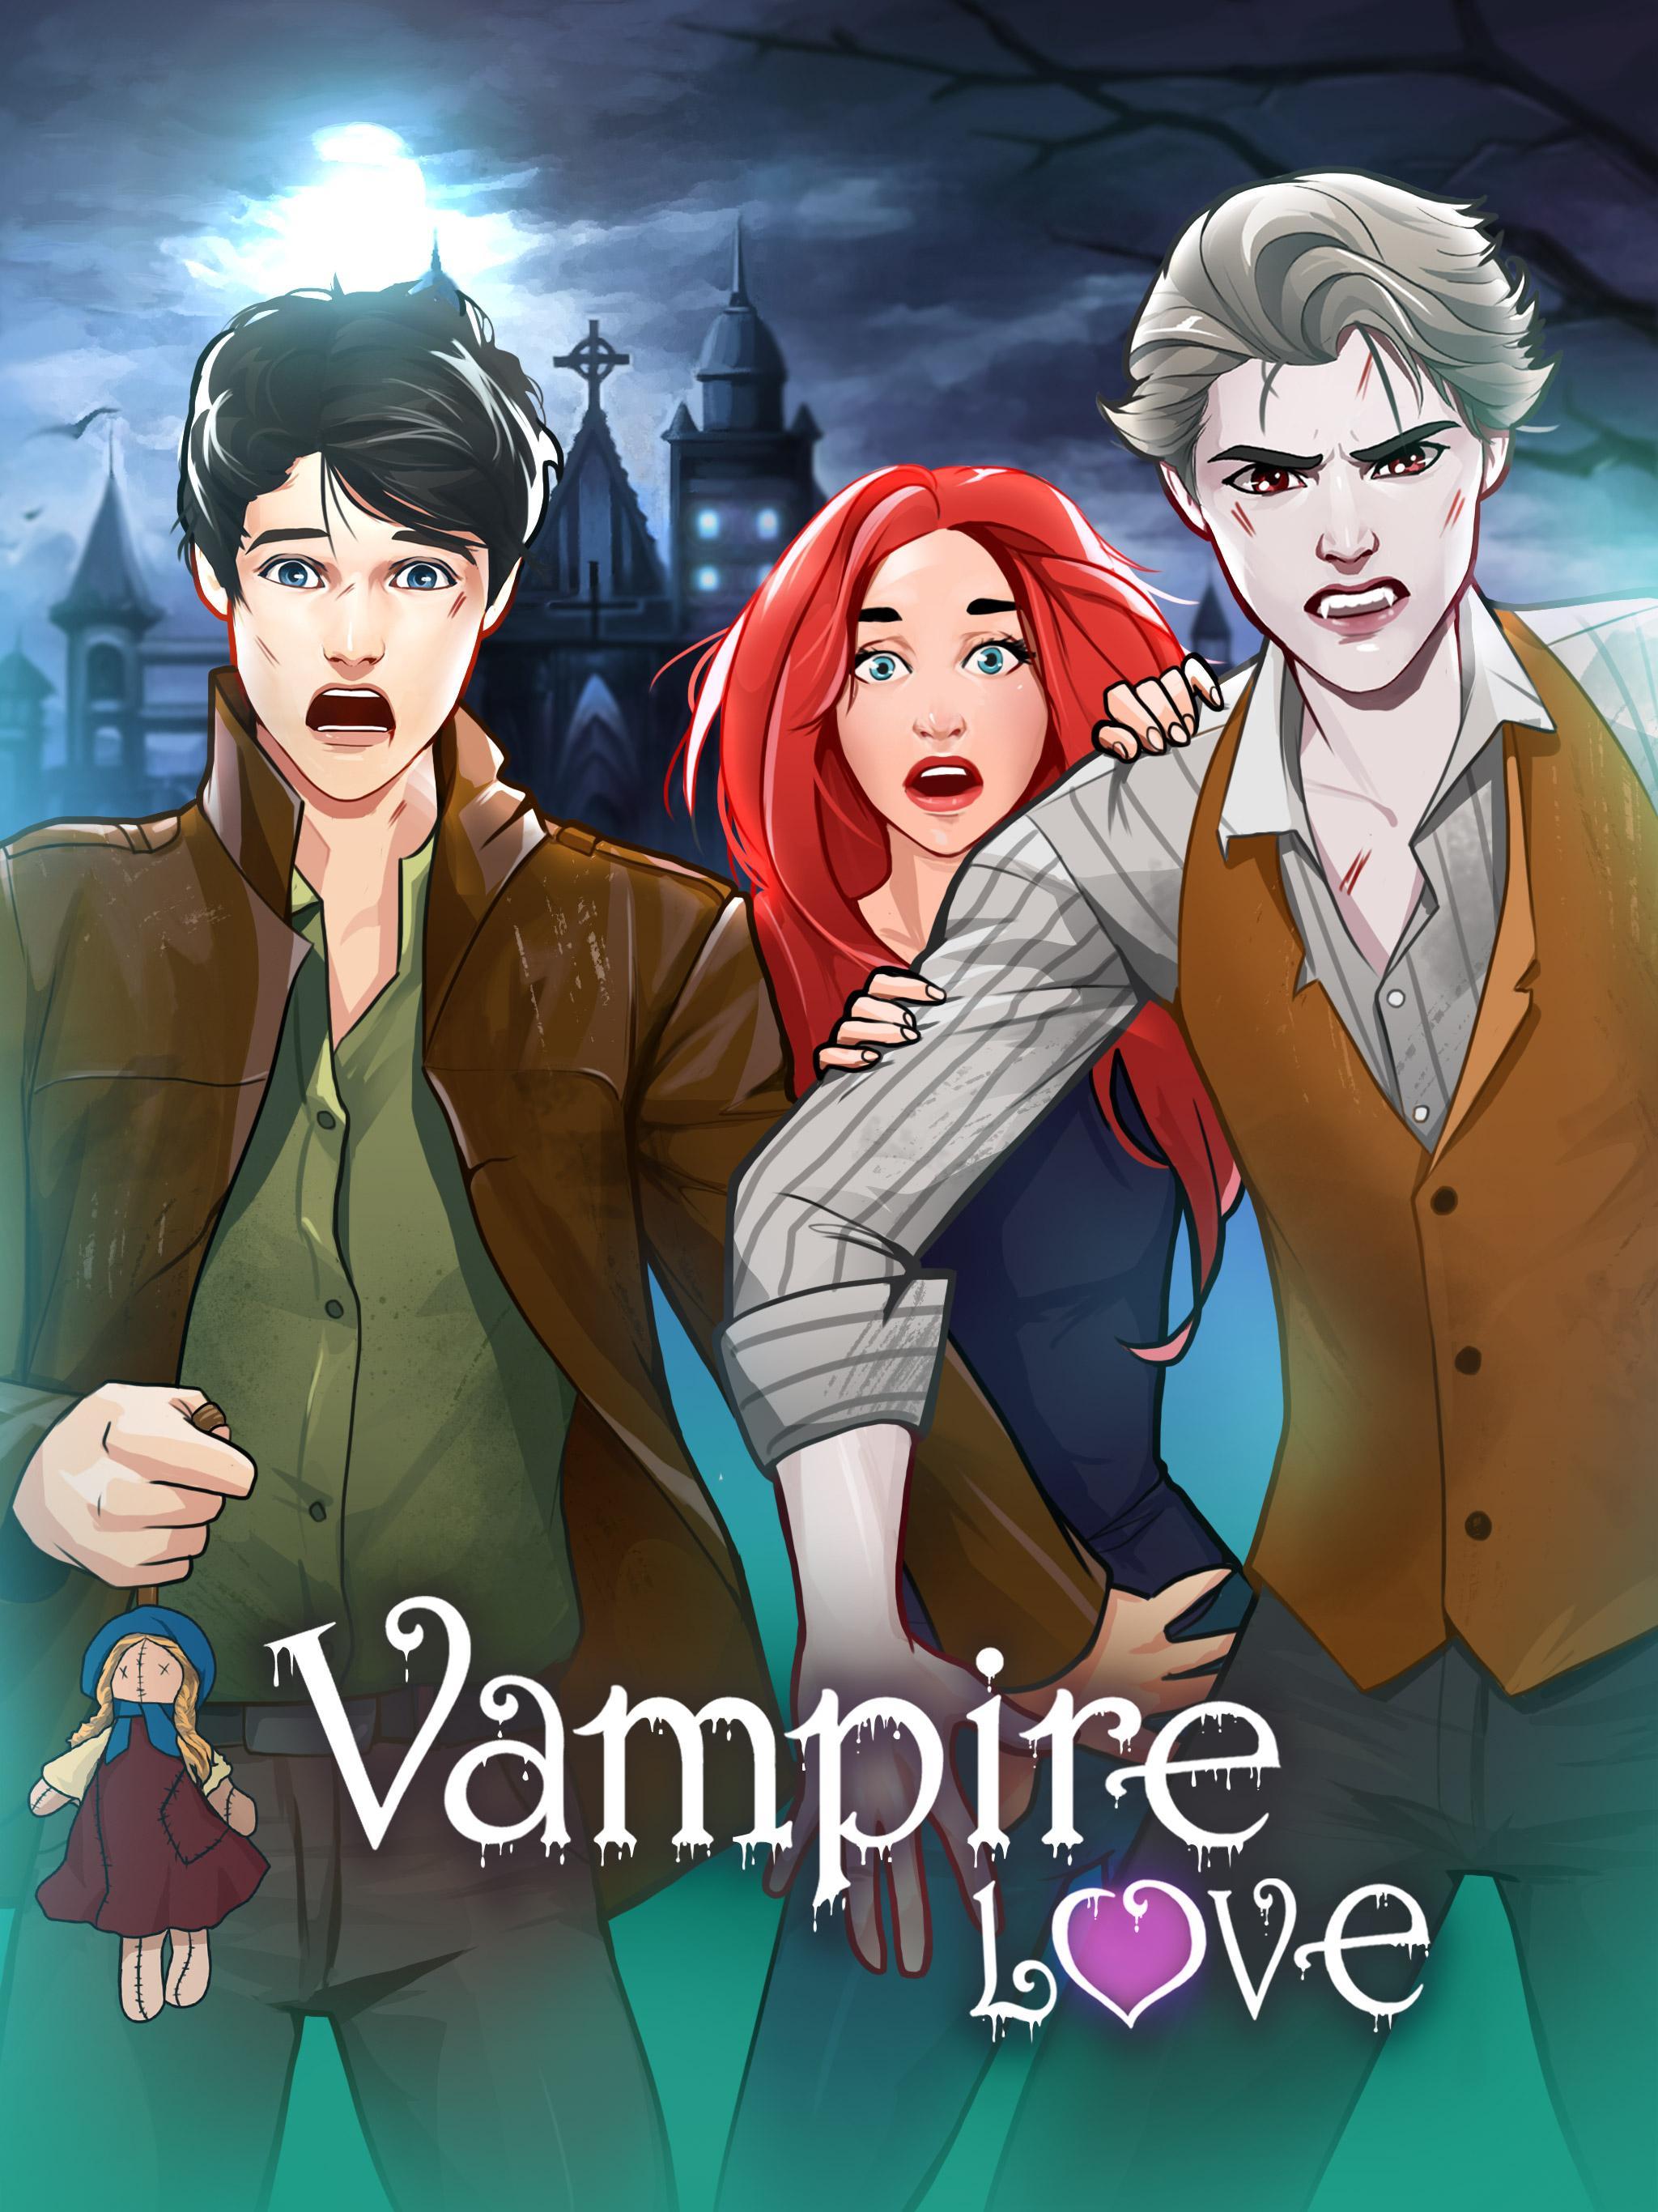 Vampire love story games. Vampire Love story игра. Игры про любовь вампиры. Романтическая история про вампиров игра. Мобильная игра про вампира.